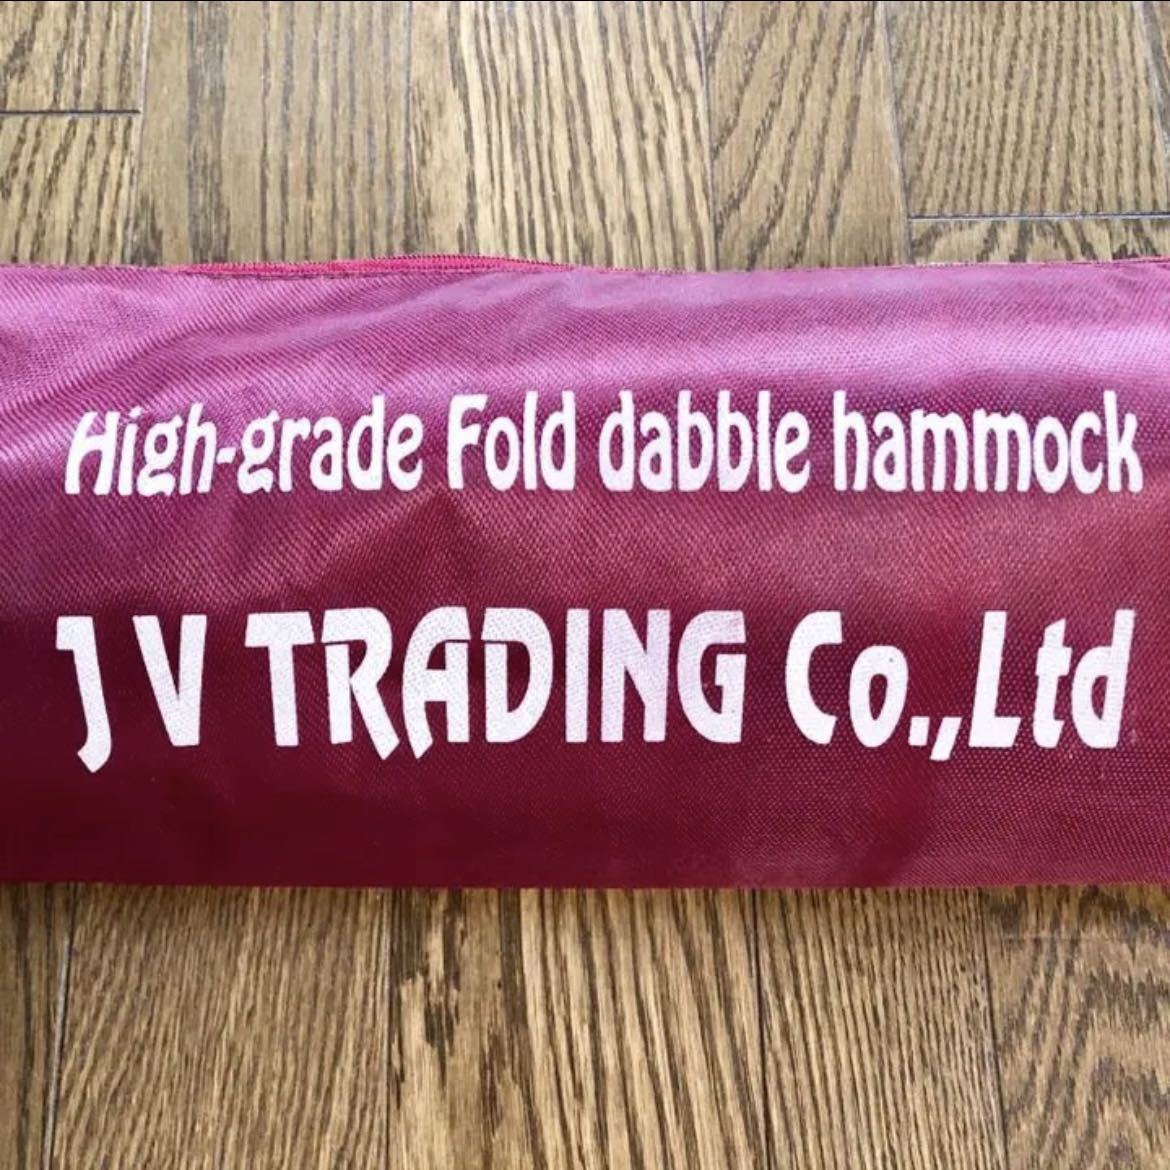 High-grade Fold dabble hammock　ハンモック　自立式　キャンプ アウトドア レジャー 日焼け 日光浴_画像4